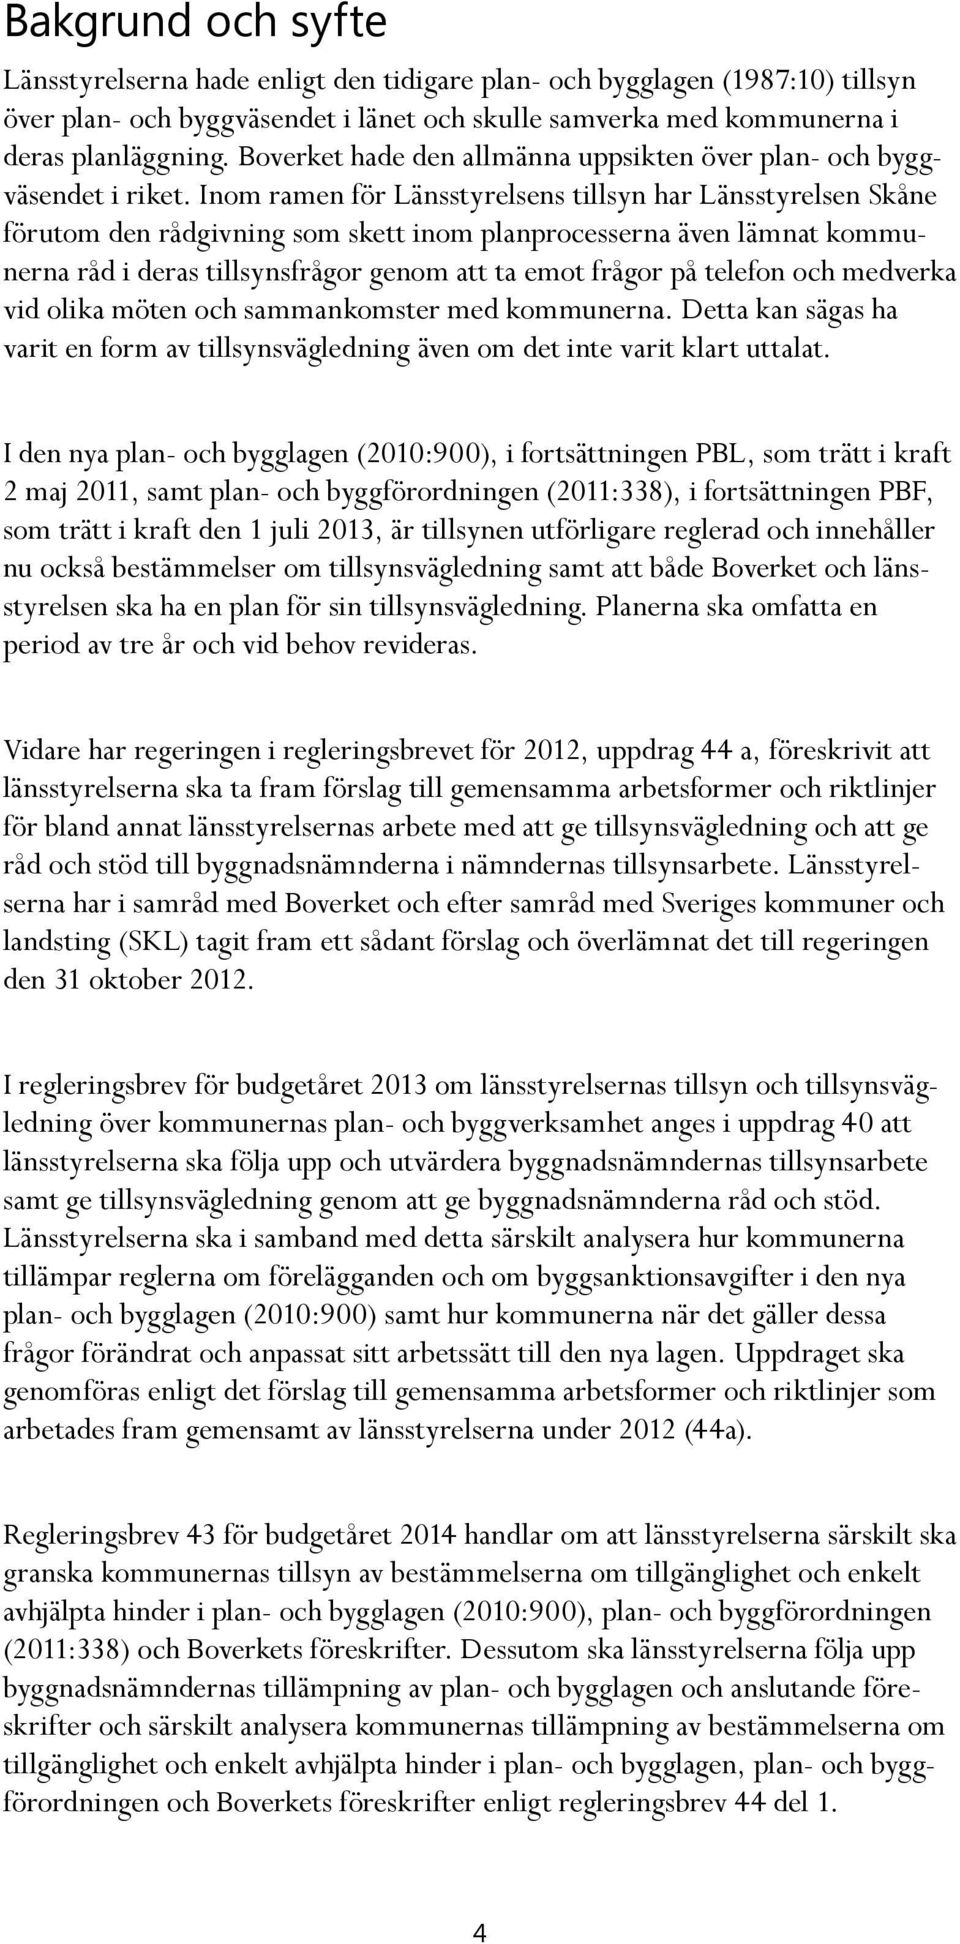 Inom ramen för Länsstyrelsens tillsyn har Länsstyrelsen Skåne förutom den rådgivning som skett inom planprocesserna även lämnat kommunerna råd i deras tillsynsfrågor genom att ta emot frågor på